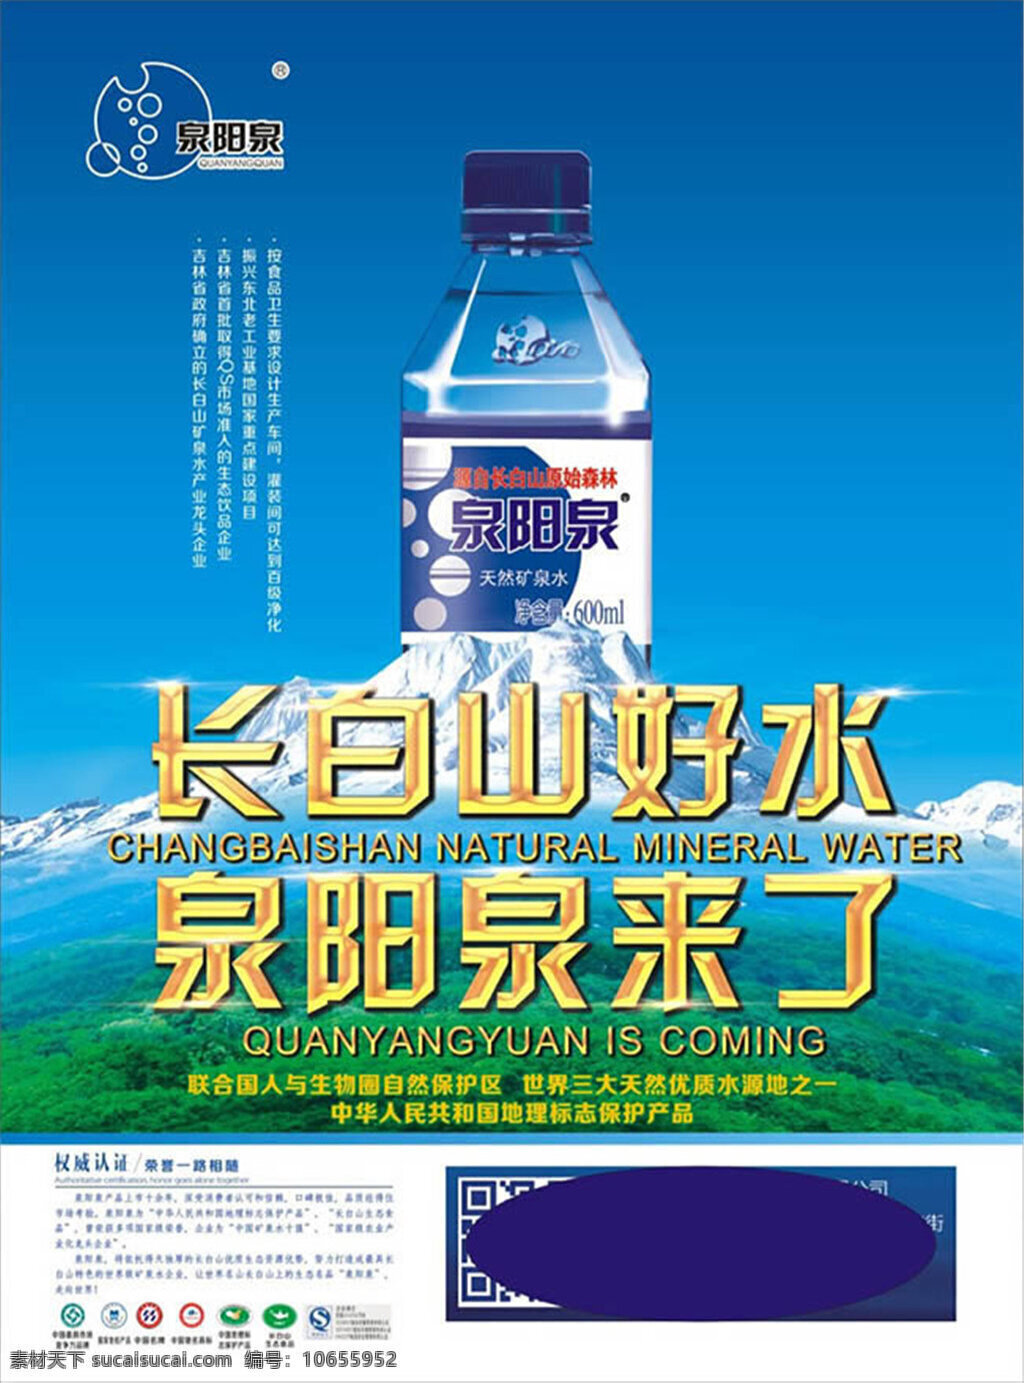 矿泉水 广告 图片设计 cdr素材 长白山 天然 饮用水 创意广告设计